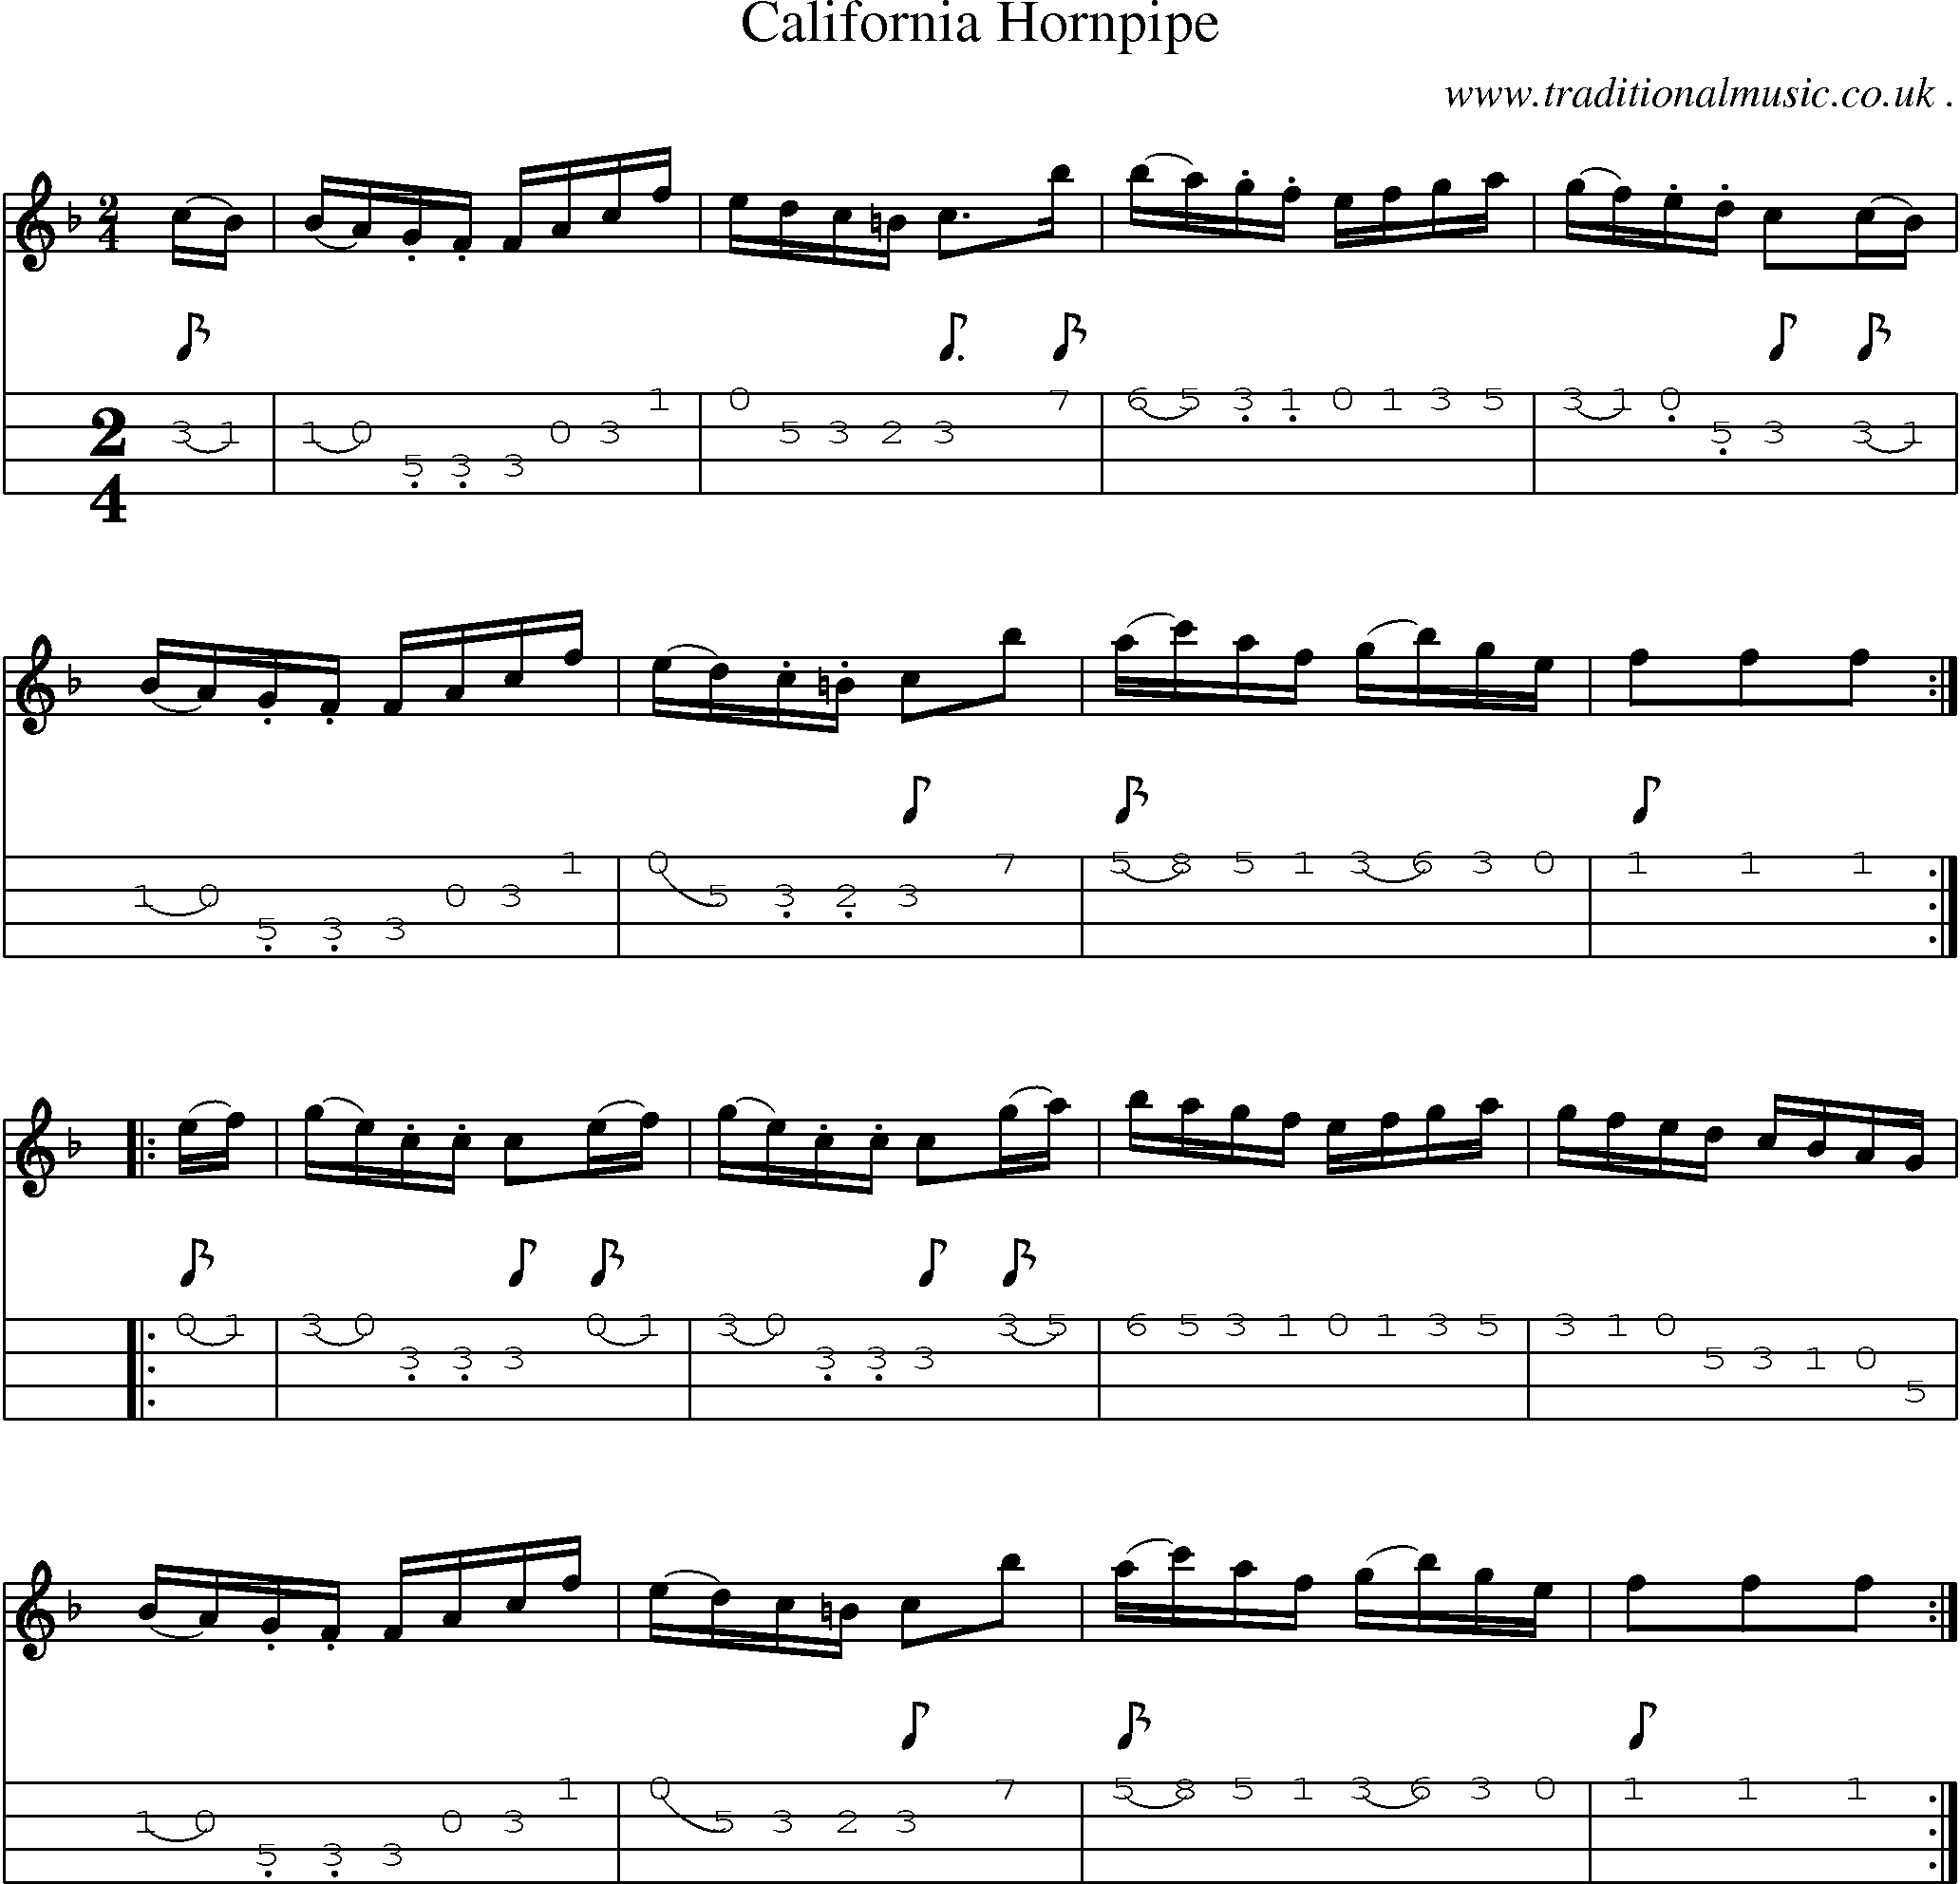 Music Score and Mandolin Tabs for California Hornpipe